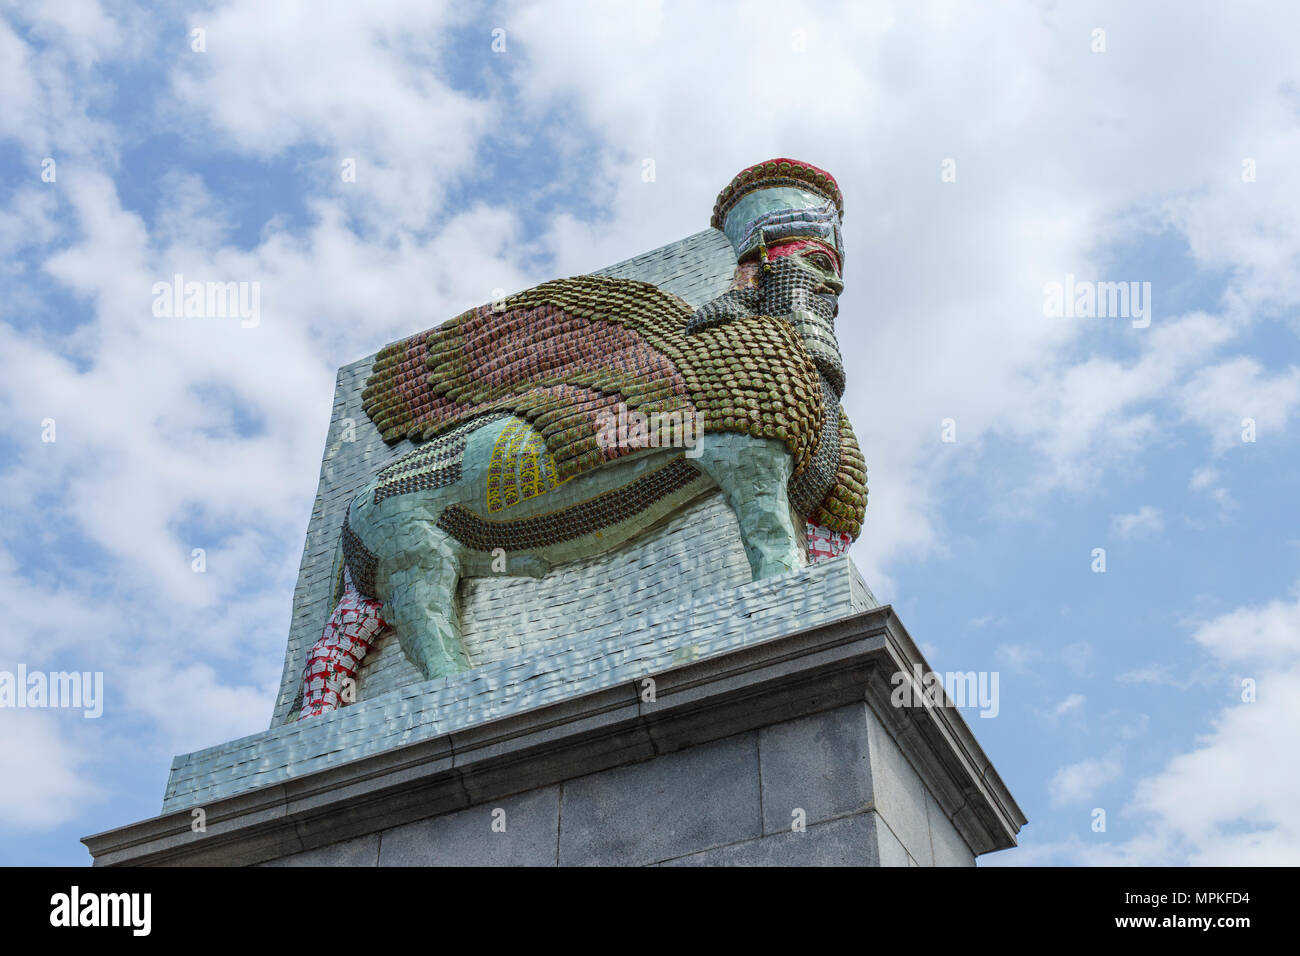 L'Assyrien Lamassu statue, l'ennemi invisible ne devrait pas exister, Quatrième soubassement, Trafalgar Square, Charing Cross, Westminster, Londres WC2 Banque D'Images